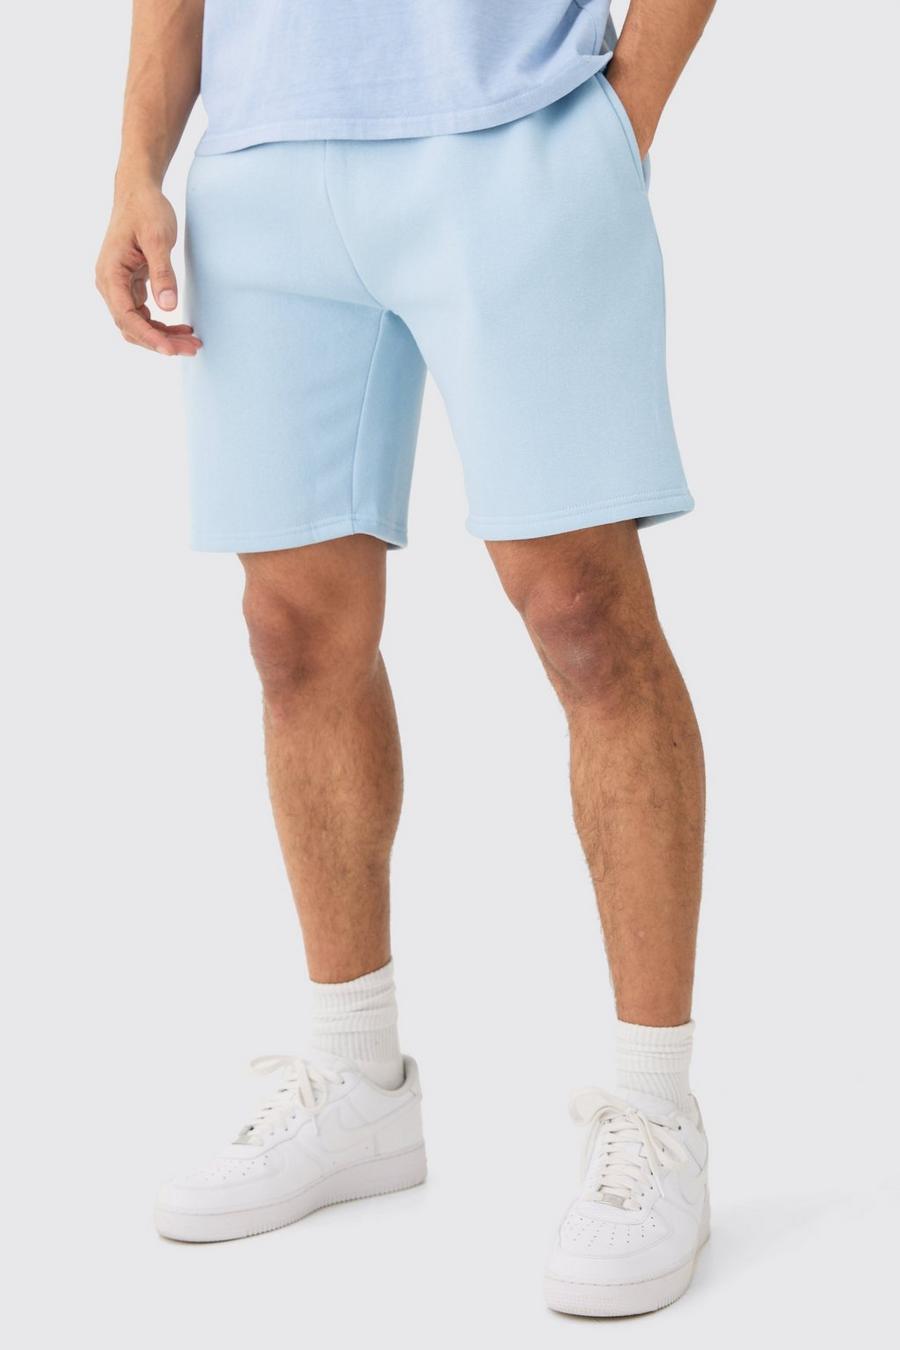 Pantalón corto básico holgado de largo medio, Baby blue